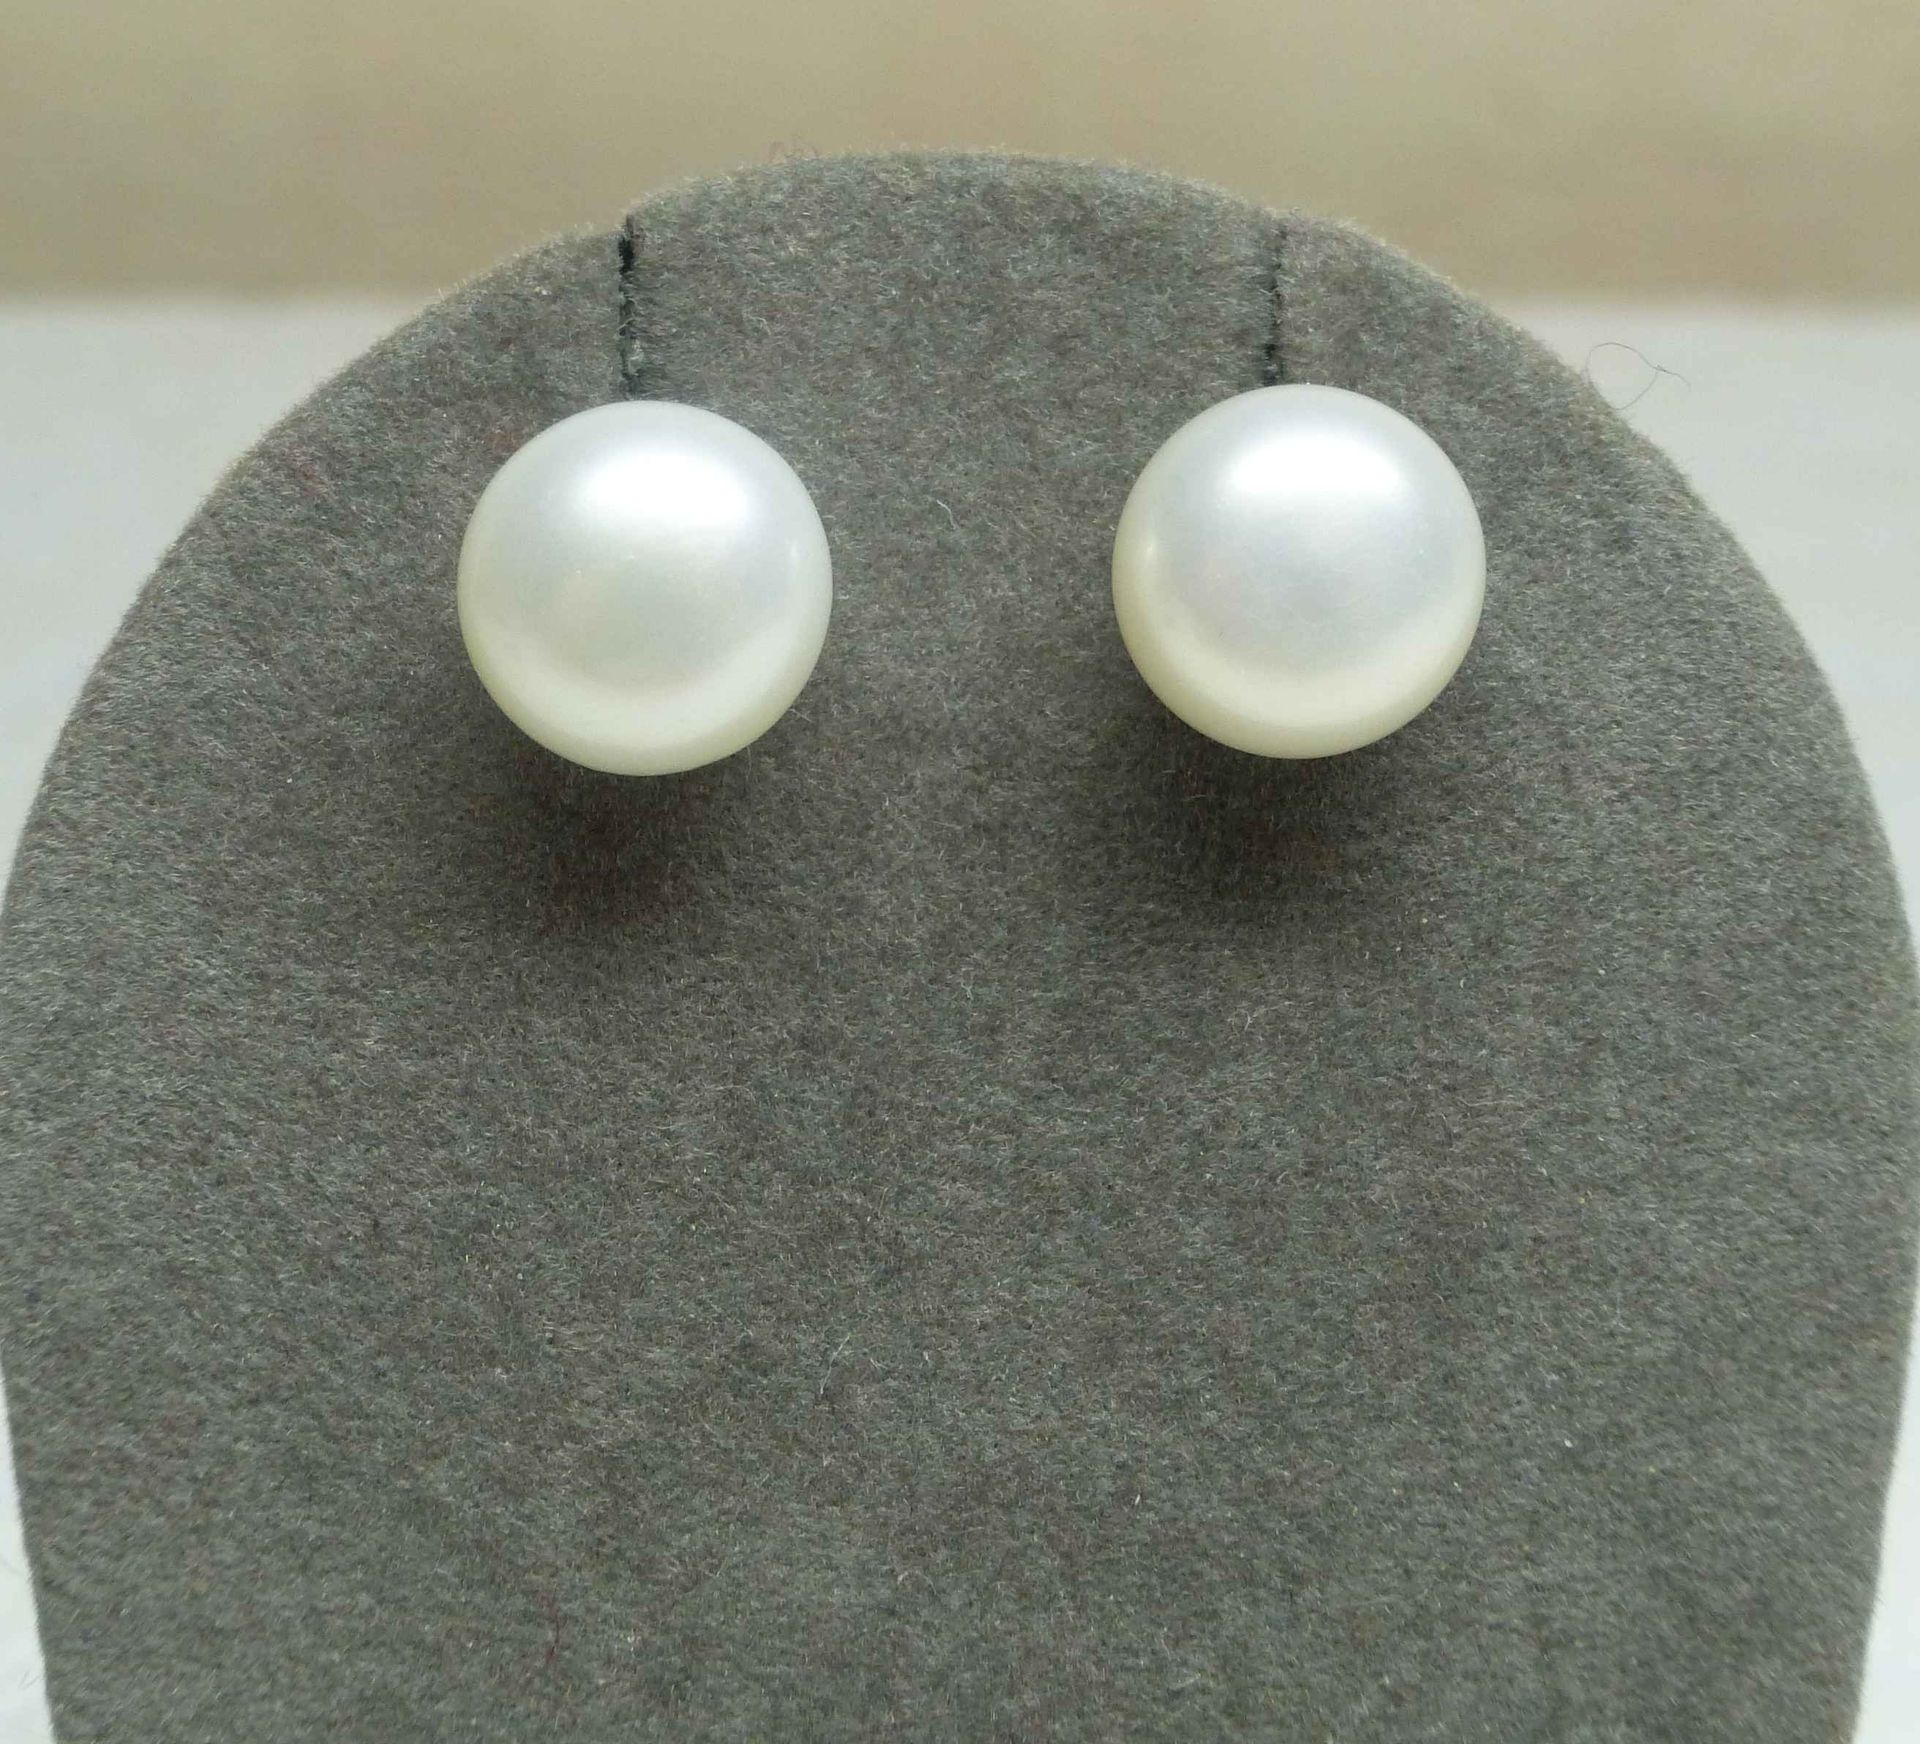 Null 一对耳环

天然养殖珍珠 "纽扣 "形状，直径9毫米 - 银质镶嵌